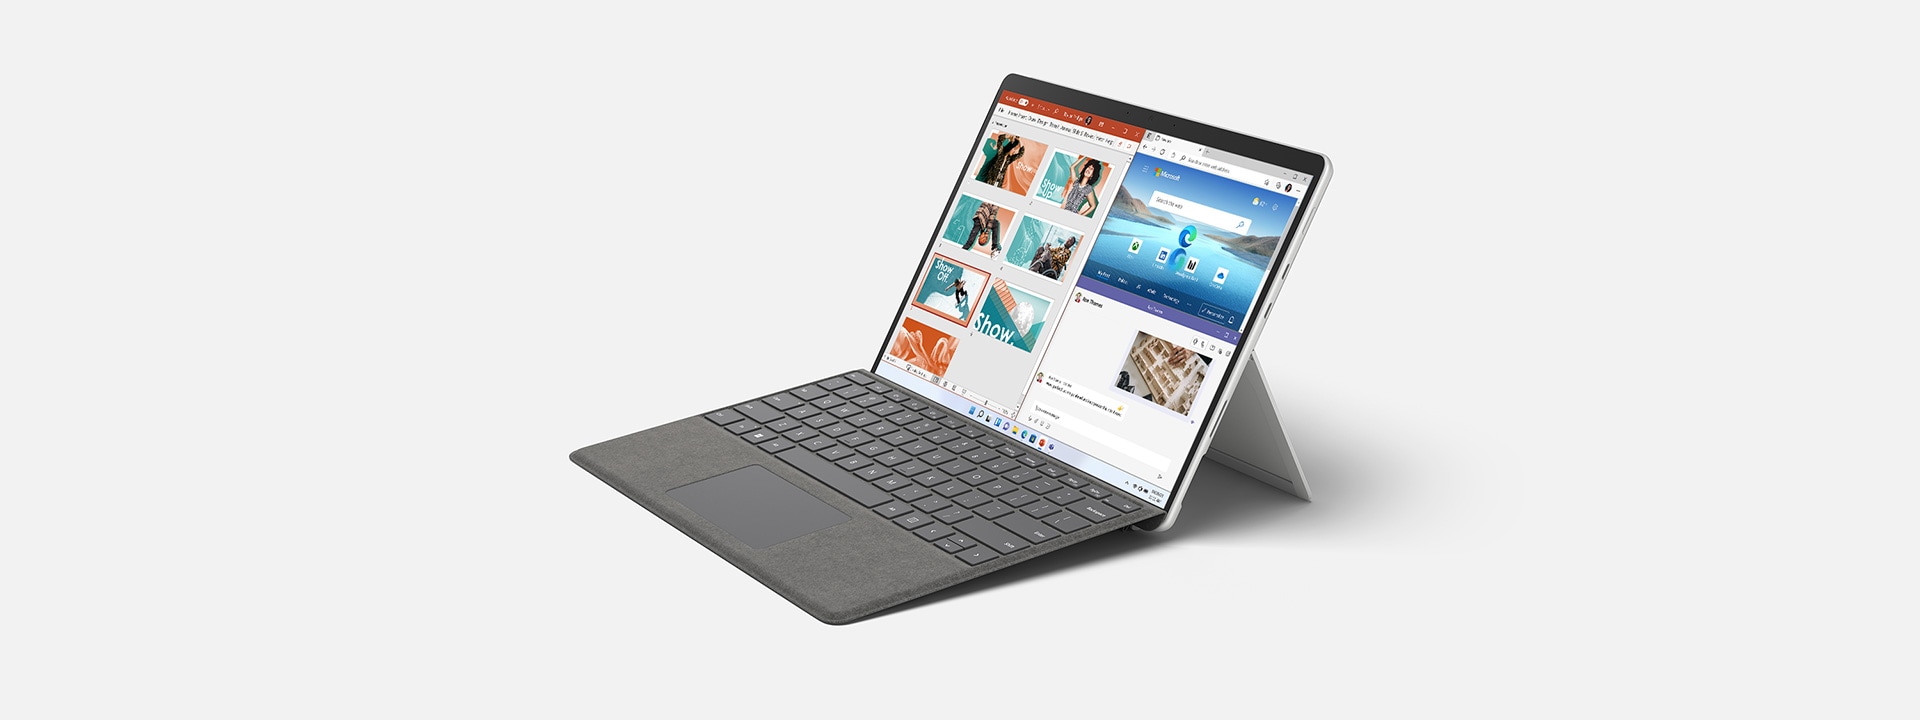 Surface Pro 8 affichant le format d’image 3:2.